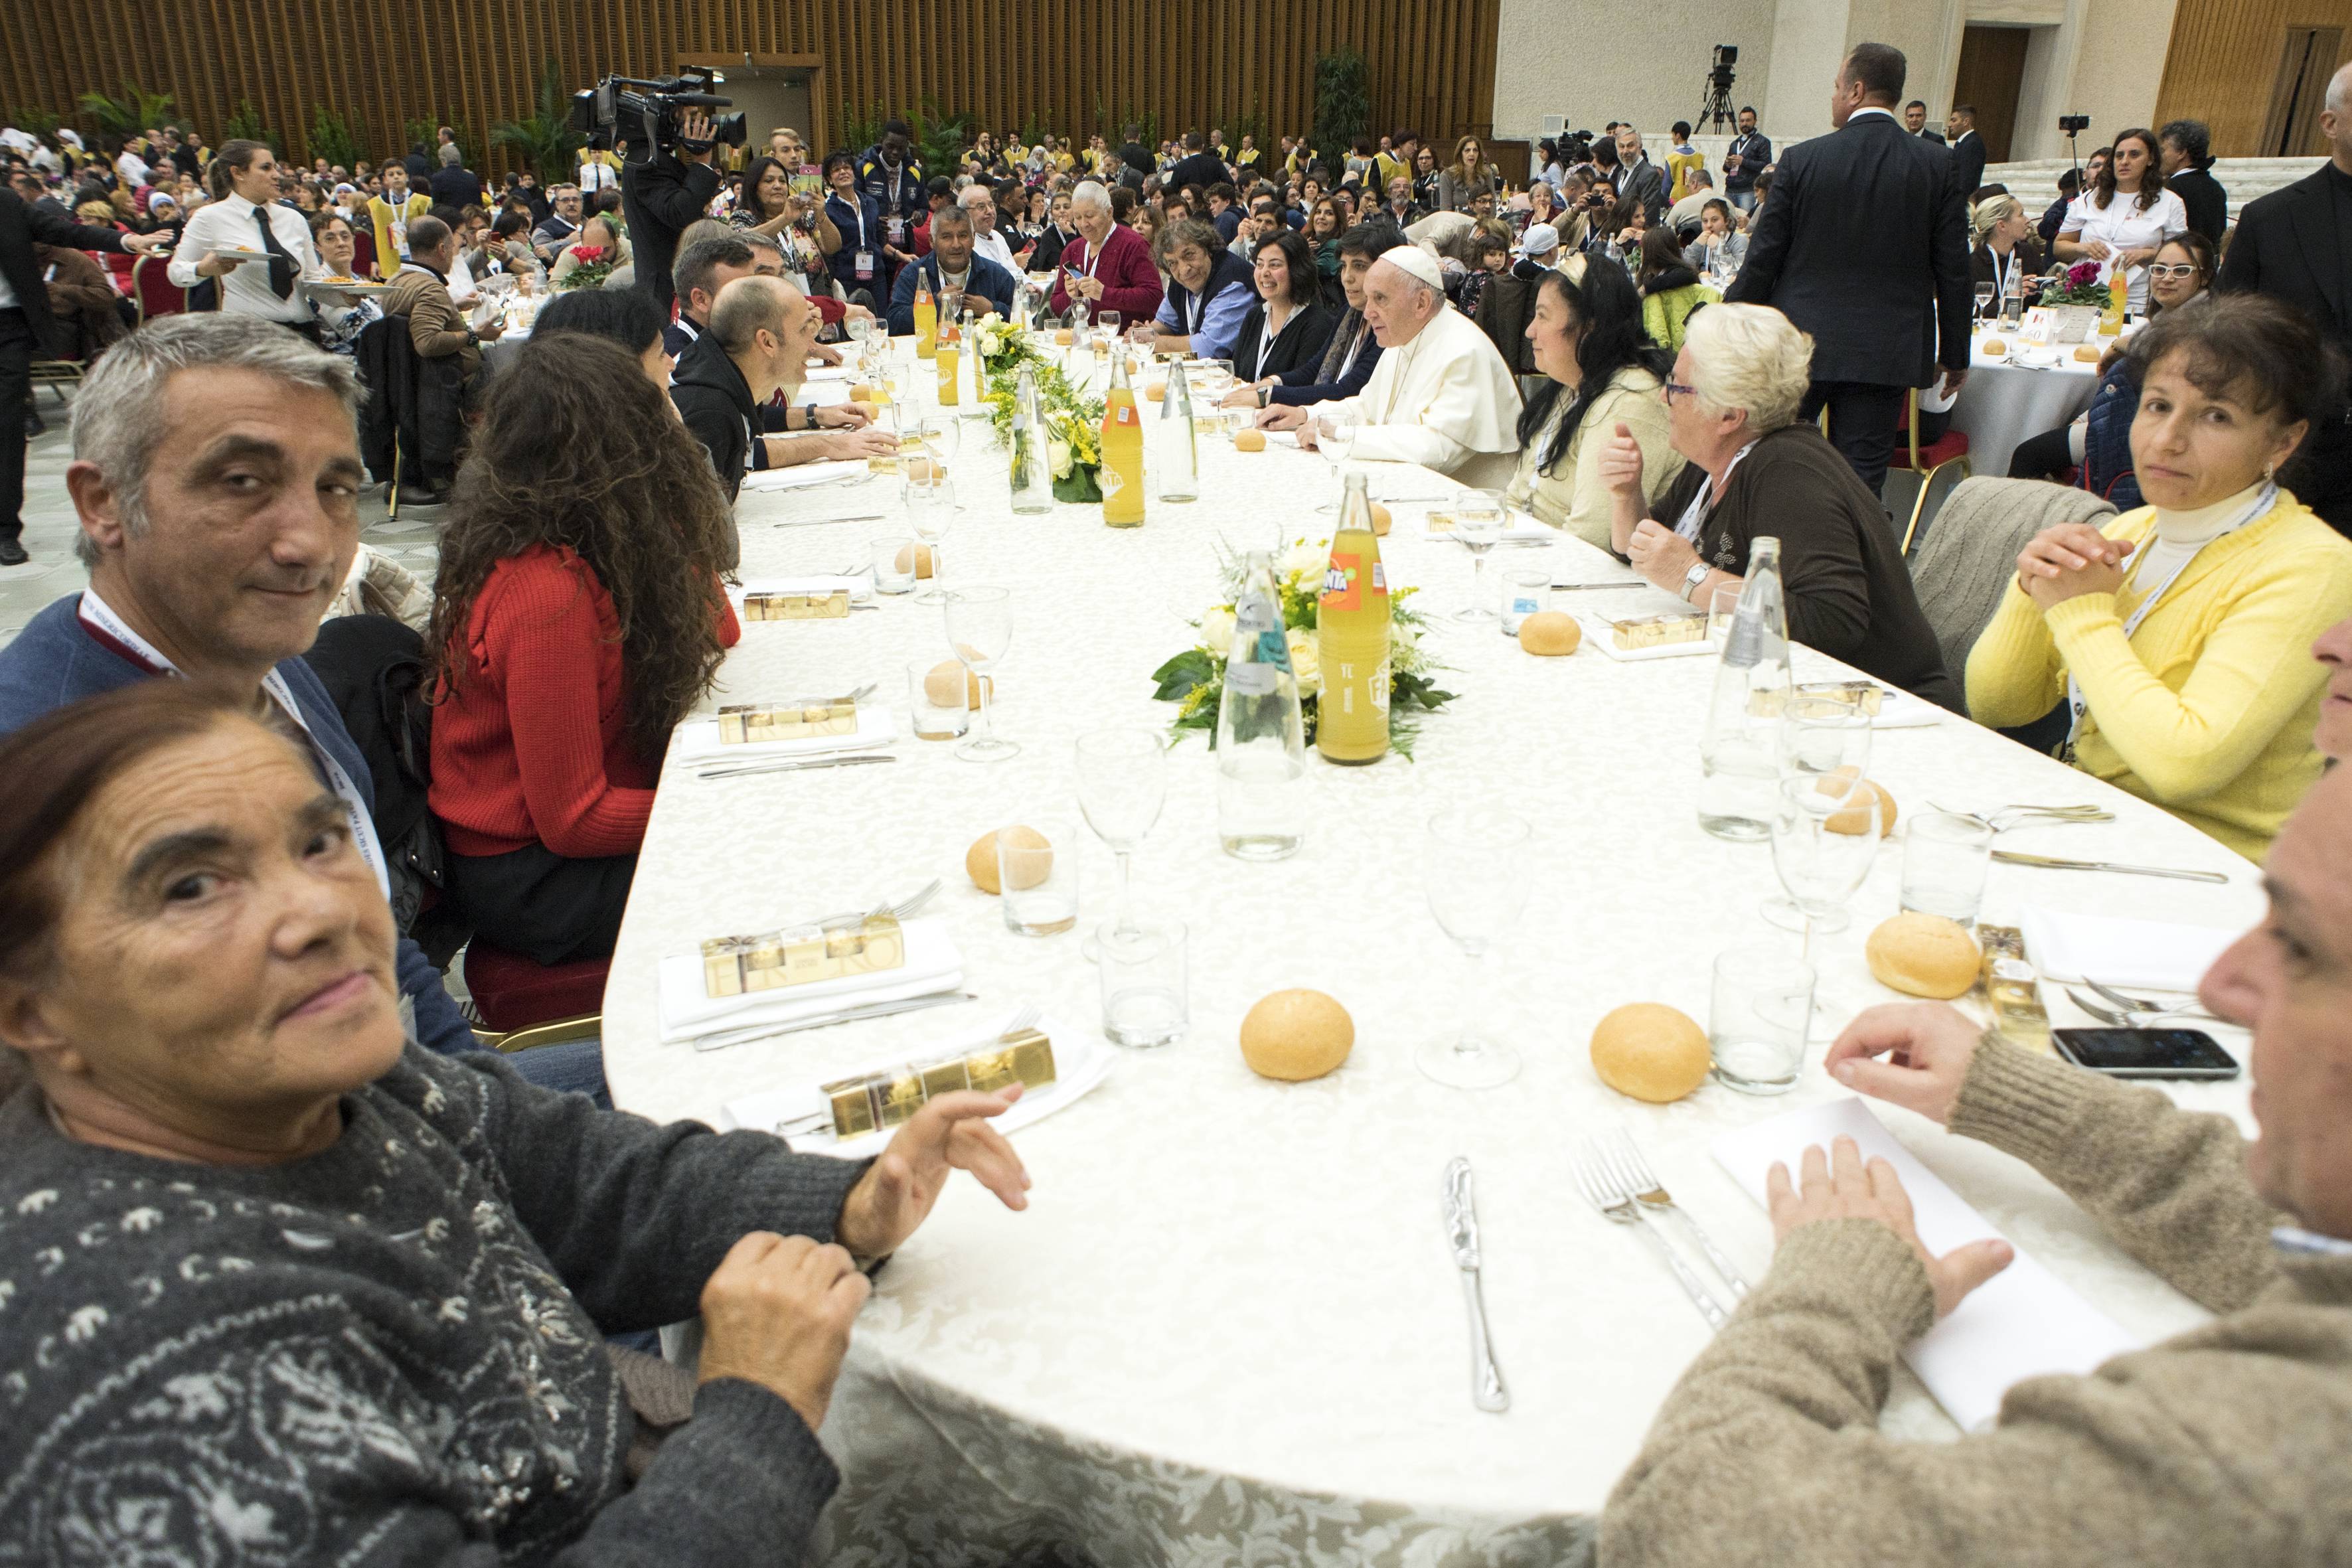 Journée mondiale des pauvres, déjeuner salle Paul VI © L'Osservatore Romano